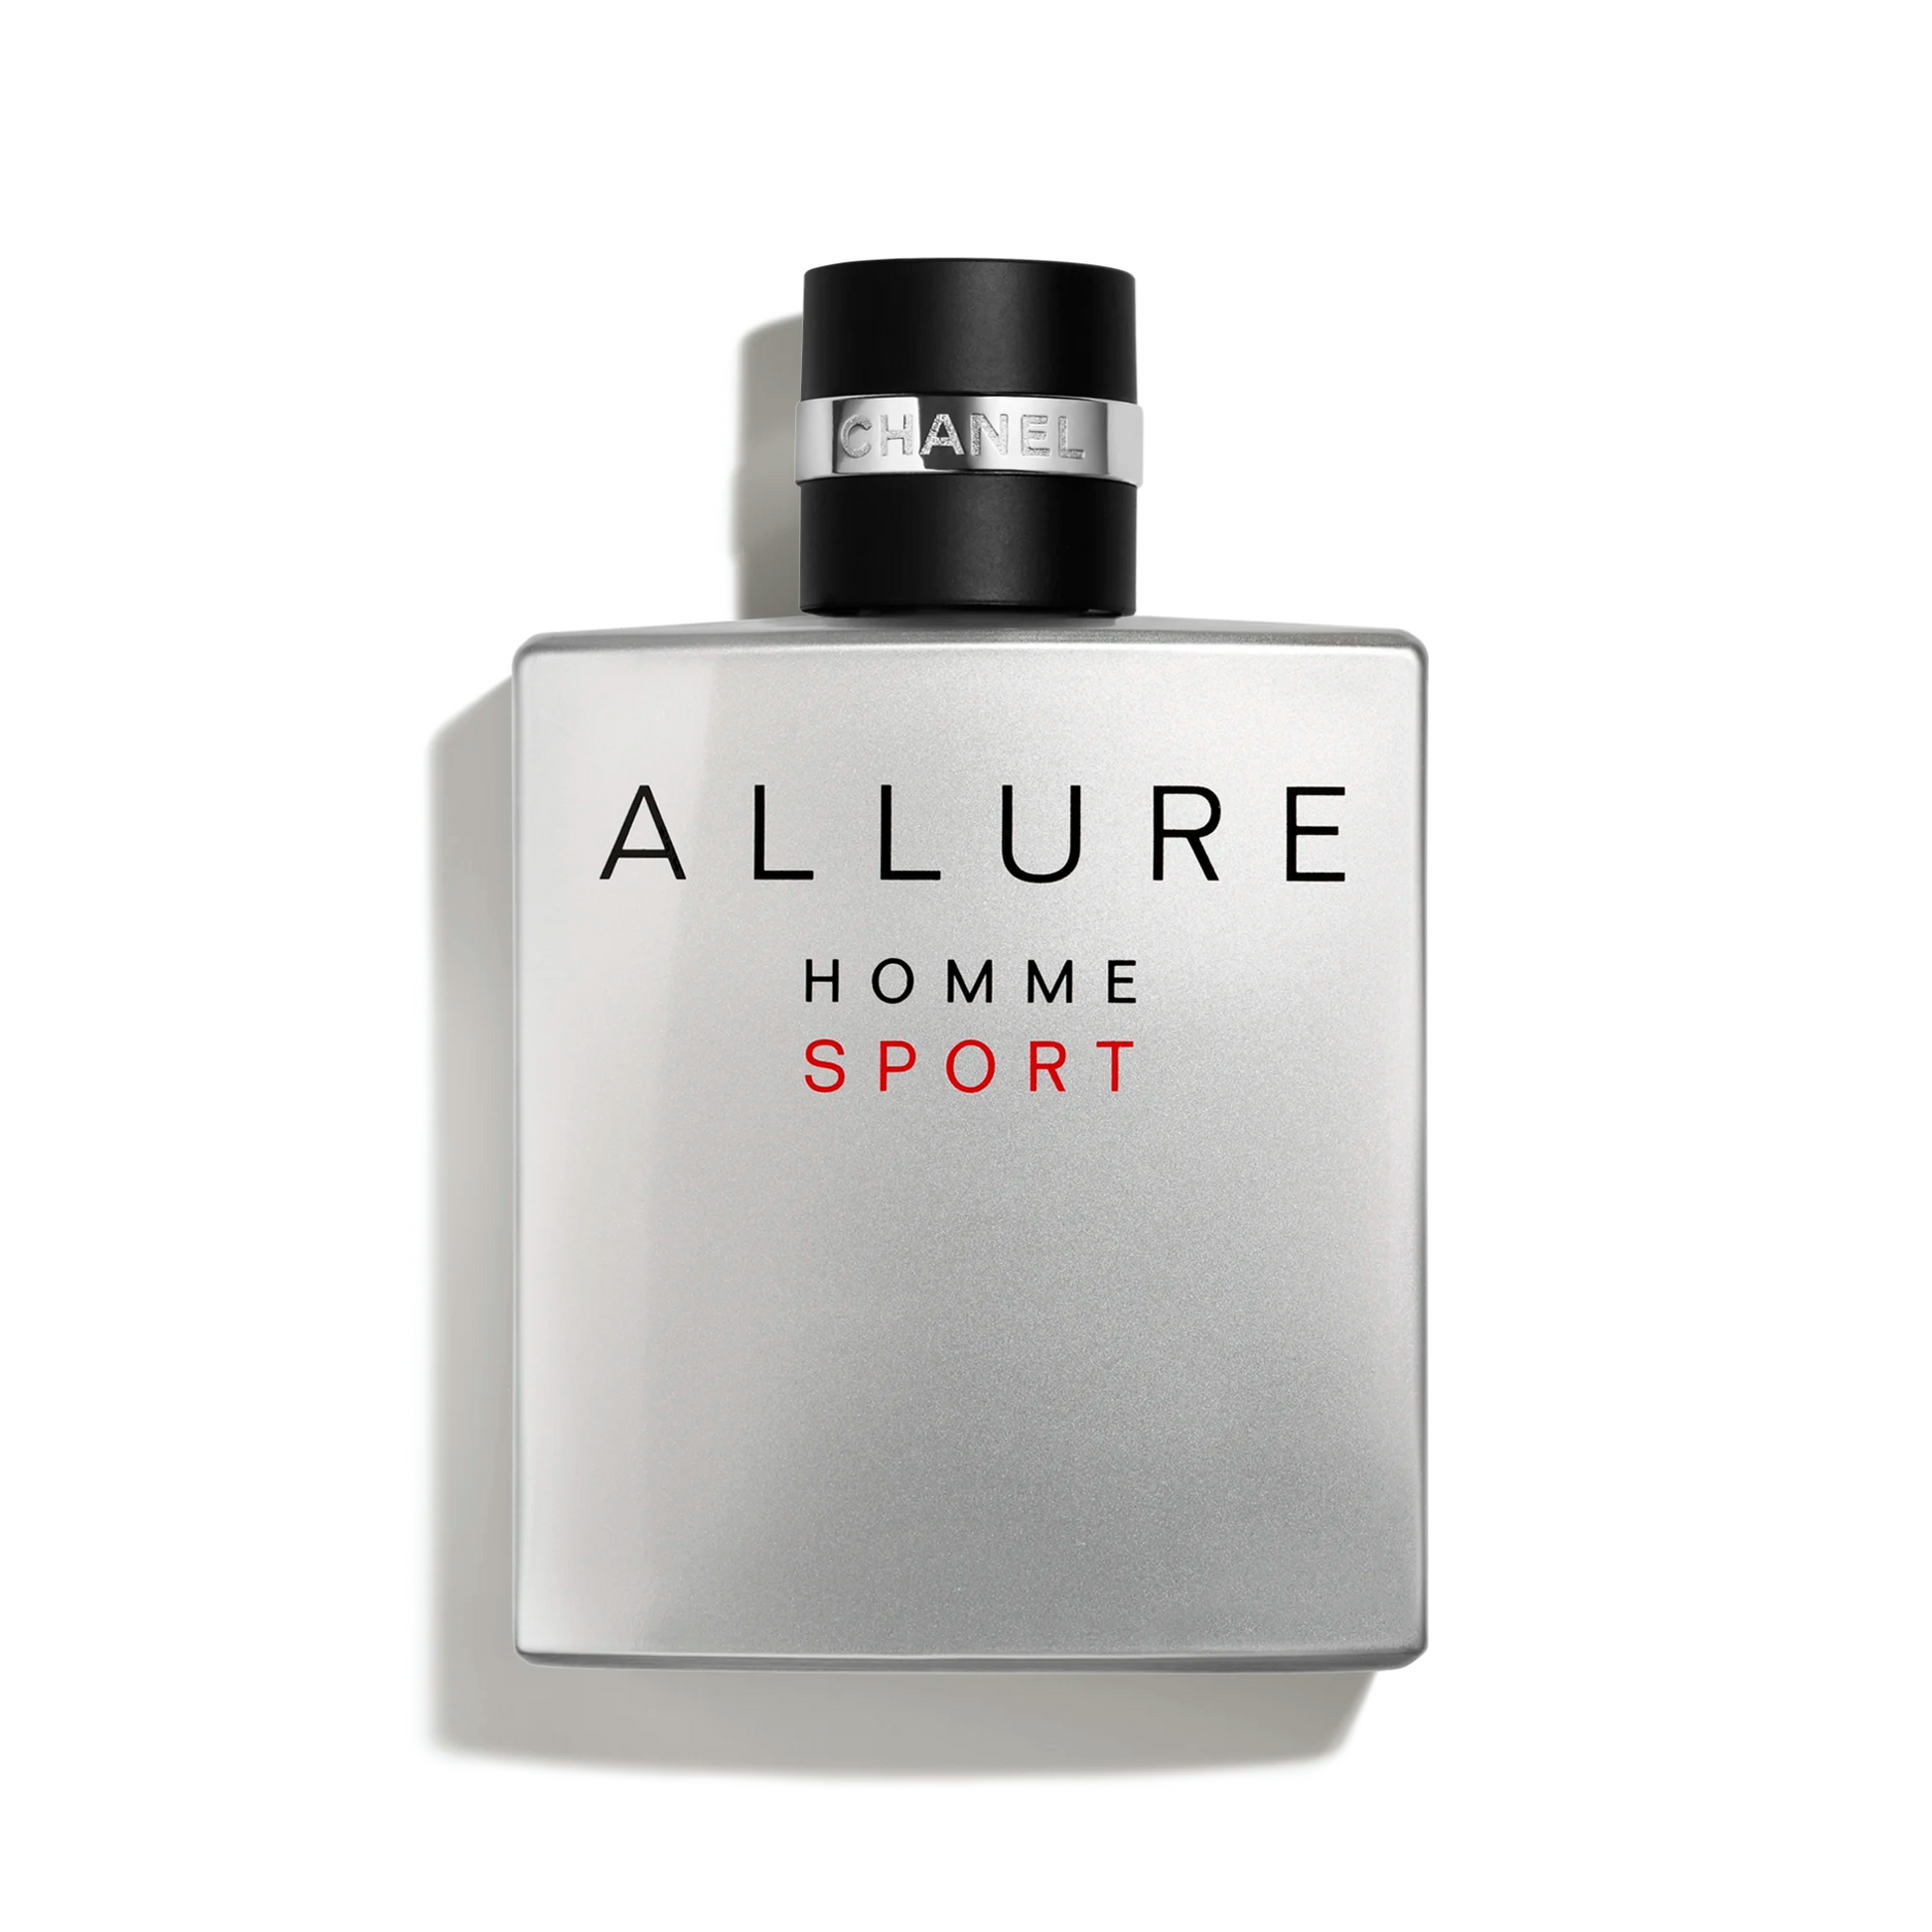 Allure Homme Sport Eau de Toilette - Perfume Planet 